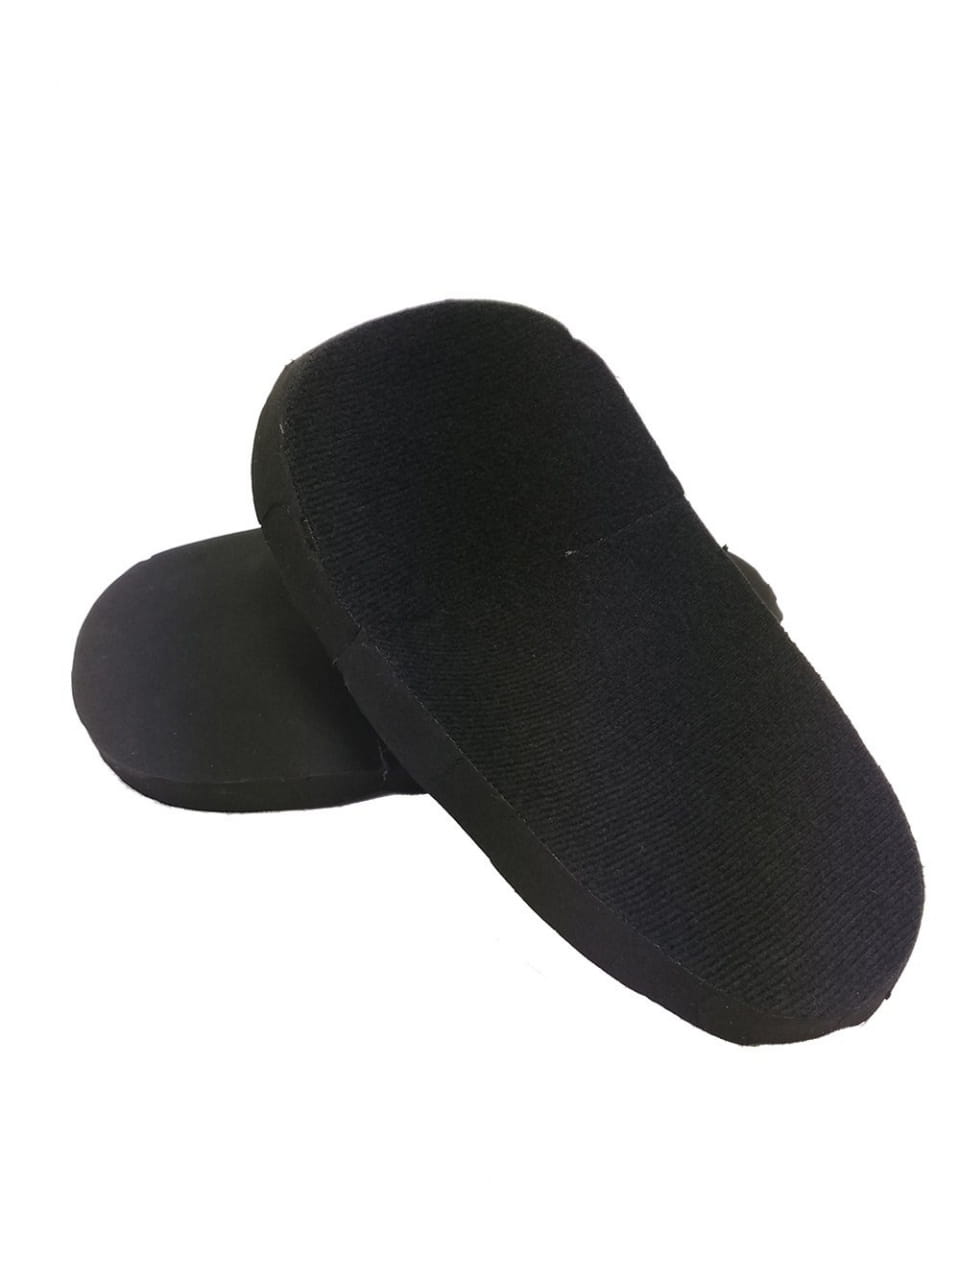 Florbalové vybavení Salming Spare Cushion ProTech Knee